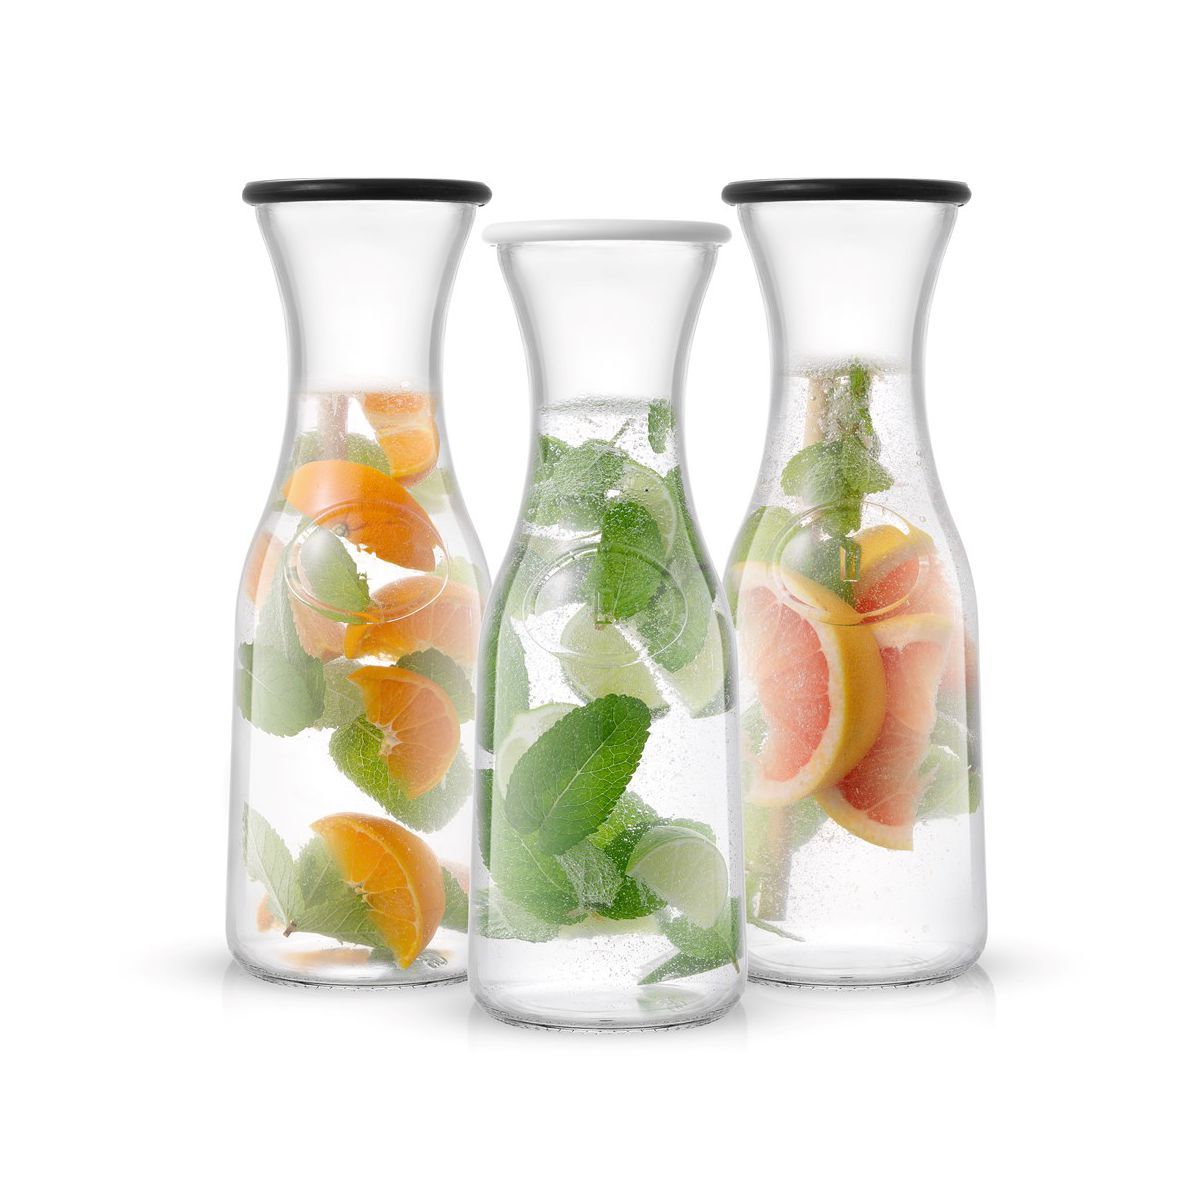 JoyJolt Hali Glass Carafe Bottle Water or Juice Pitcher with 6 Lids - 35 oz - Set of 3 | Target